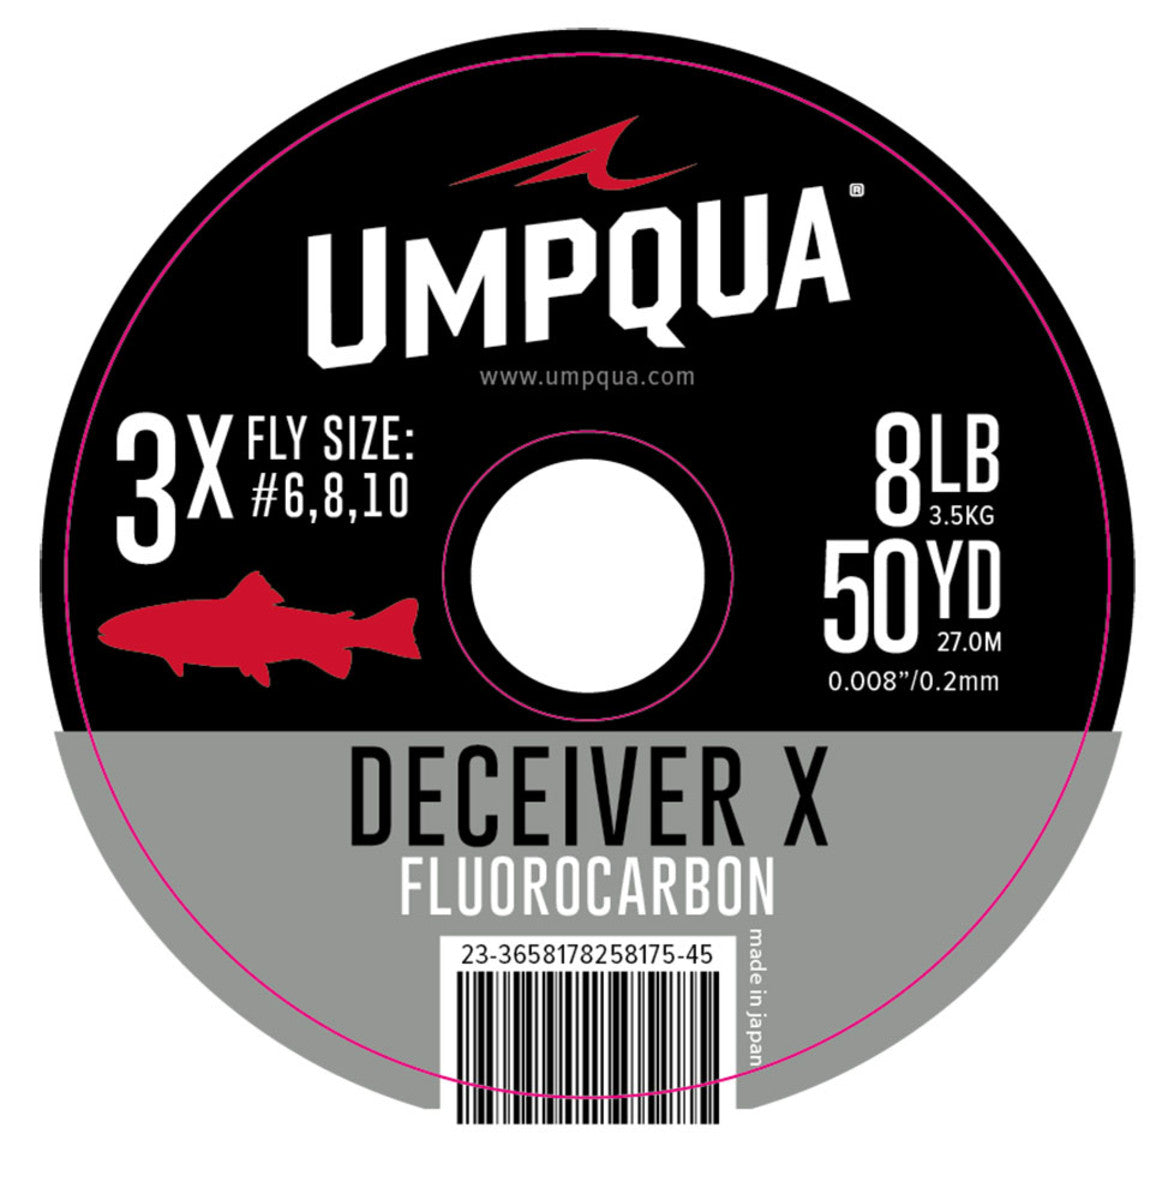 Umpqua Deceiver X Fluorocarbon